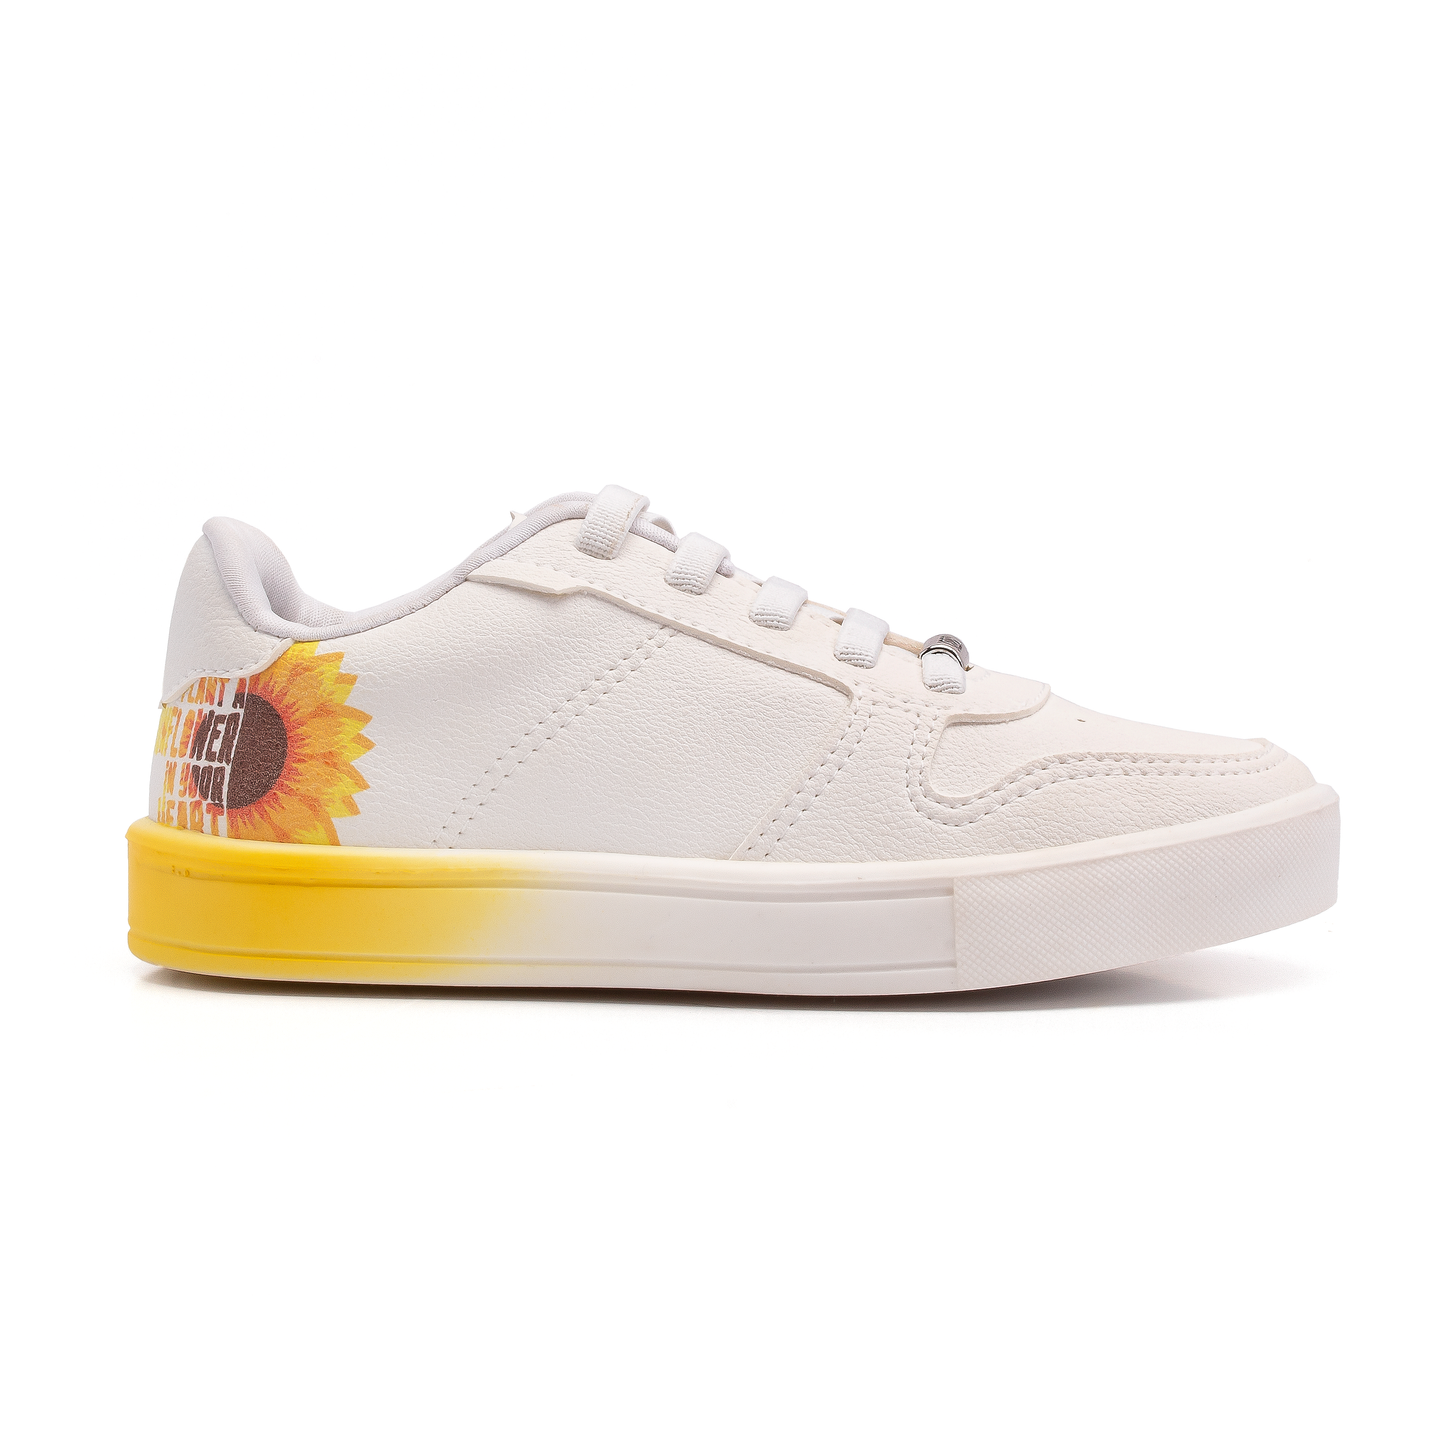 KLIN - Easy Sneaker -White/Yellow - Seeding Collection